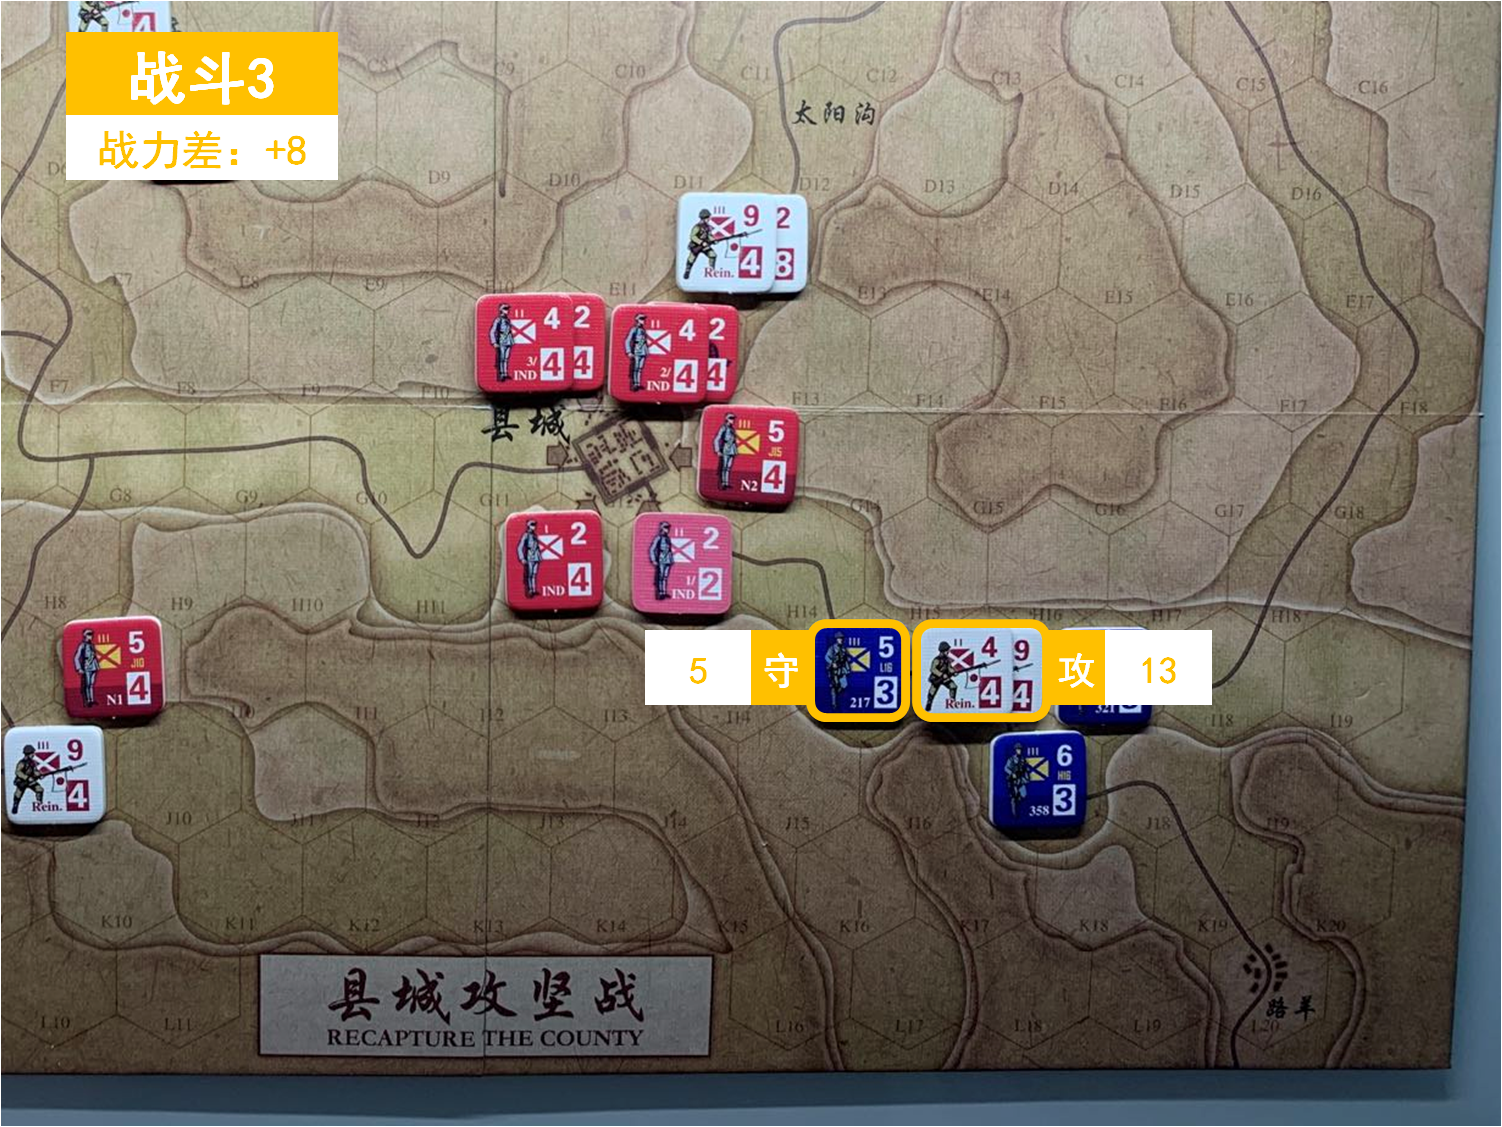 第四回合 日方戰鬥階段 戰鬥3 戰鬥力差值